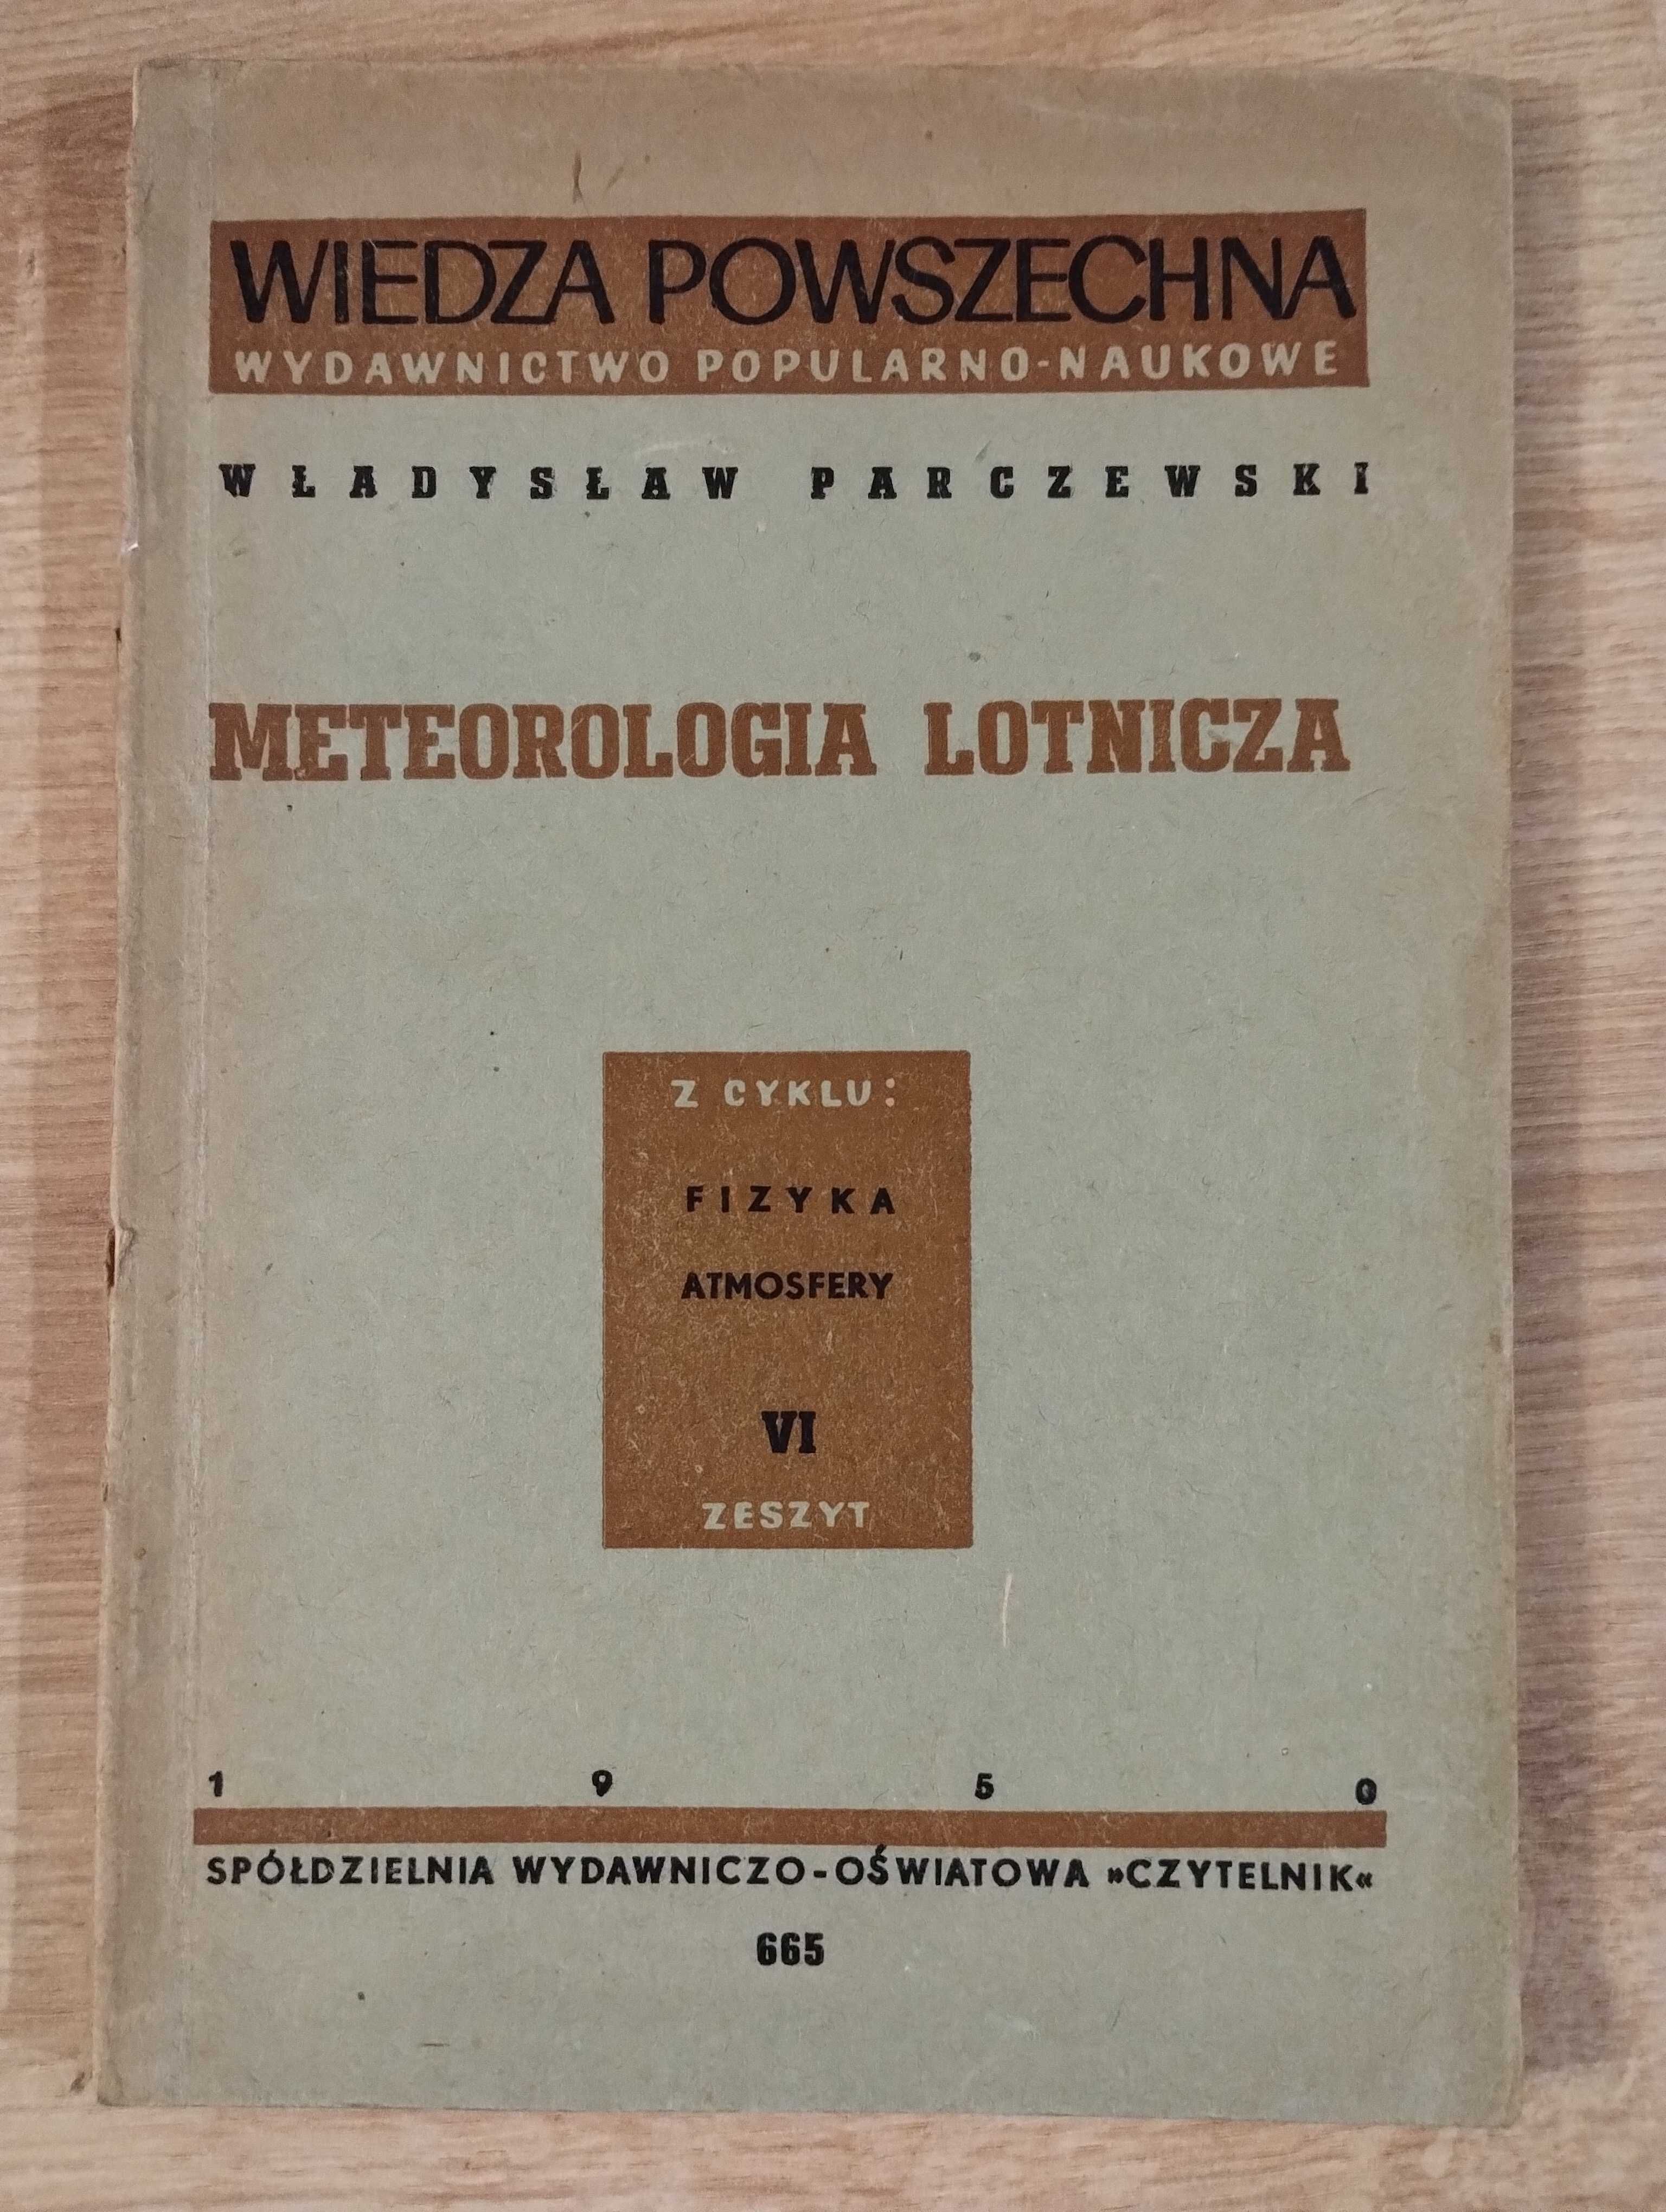 Parczewski Meteorologia lotnicza cyklu Fizyka atmosfery VI Zeszyt 1950